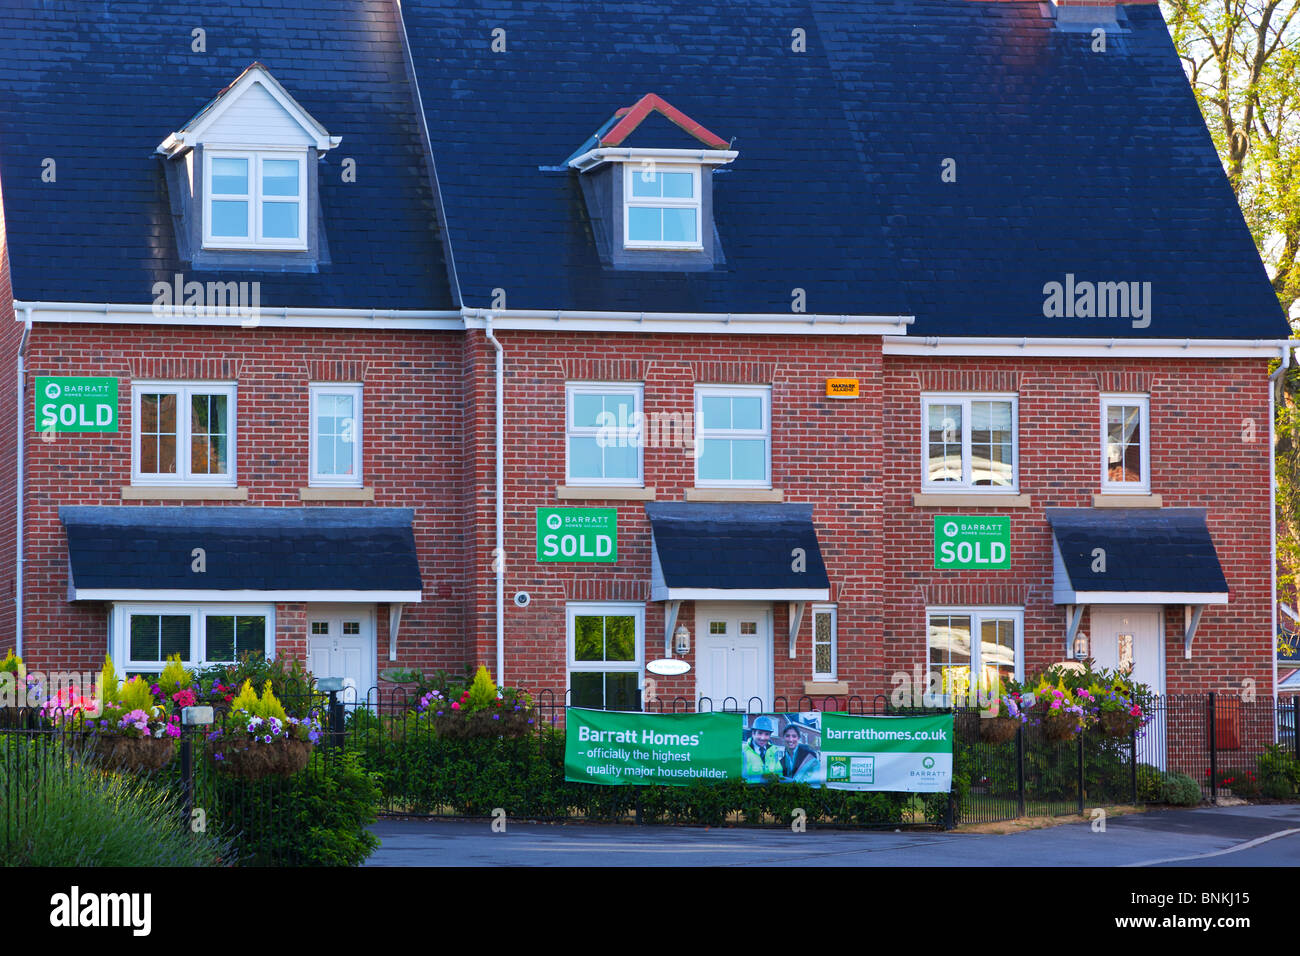 Fila de nuevo Barratt casas en una urbanización en Hampshire, Sureste de Inglaterra, cada uno con la venta de un cartel en la pared. Foto de stock